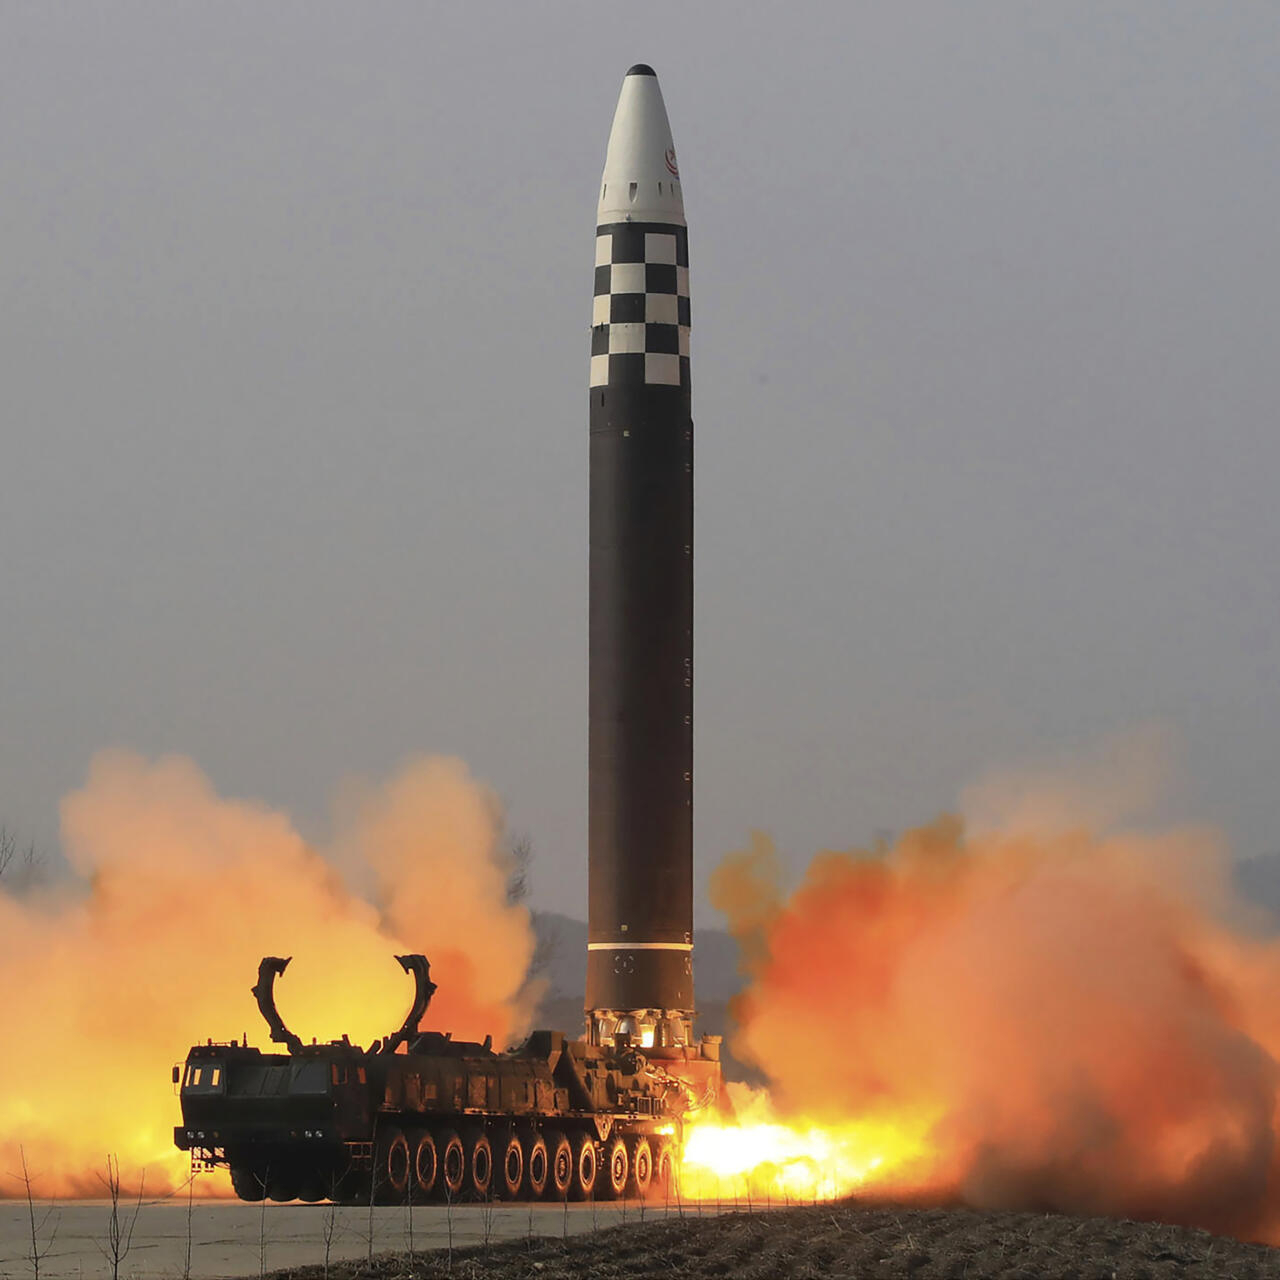 كوريا الشمالية تطلق صاروخاً بالستياً أثناء وجود كيم في روسيا